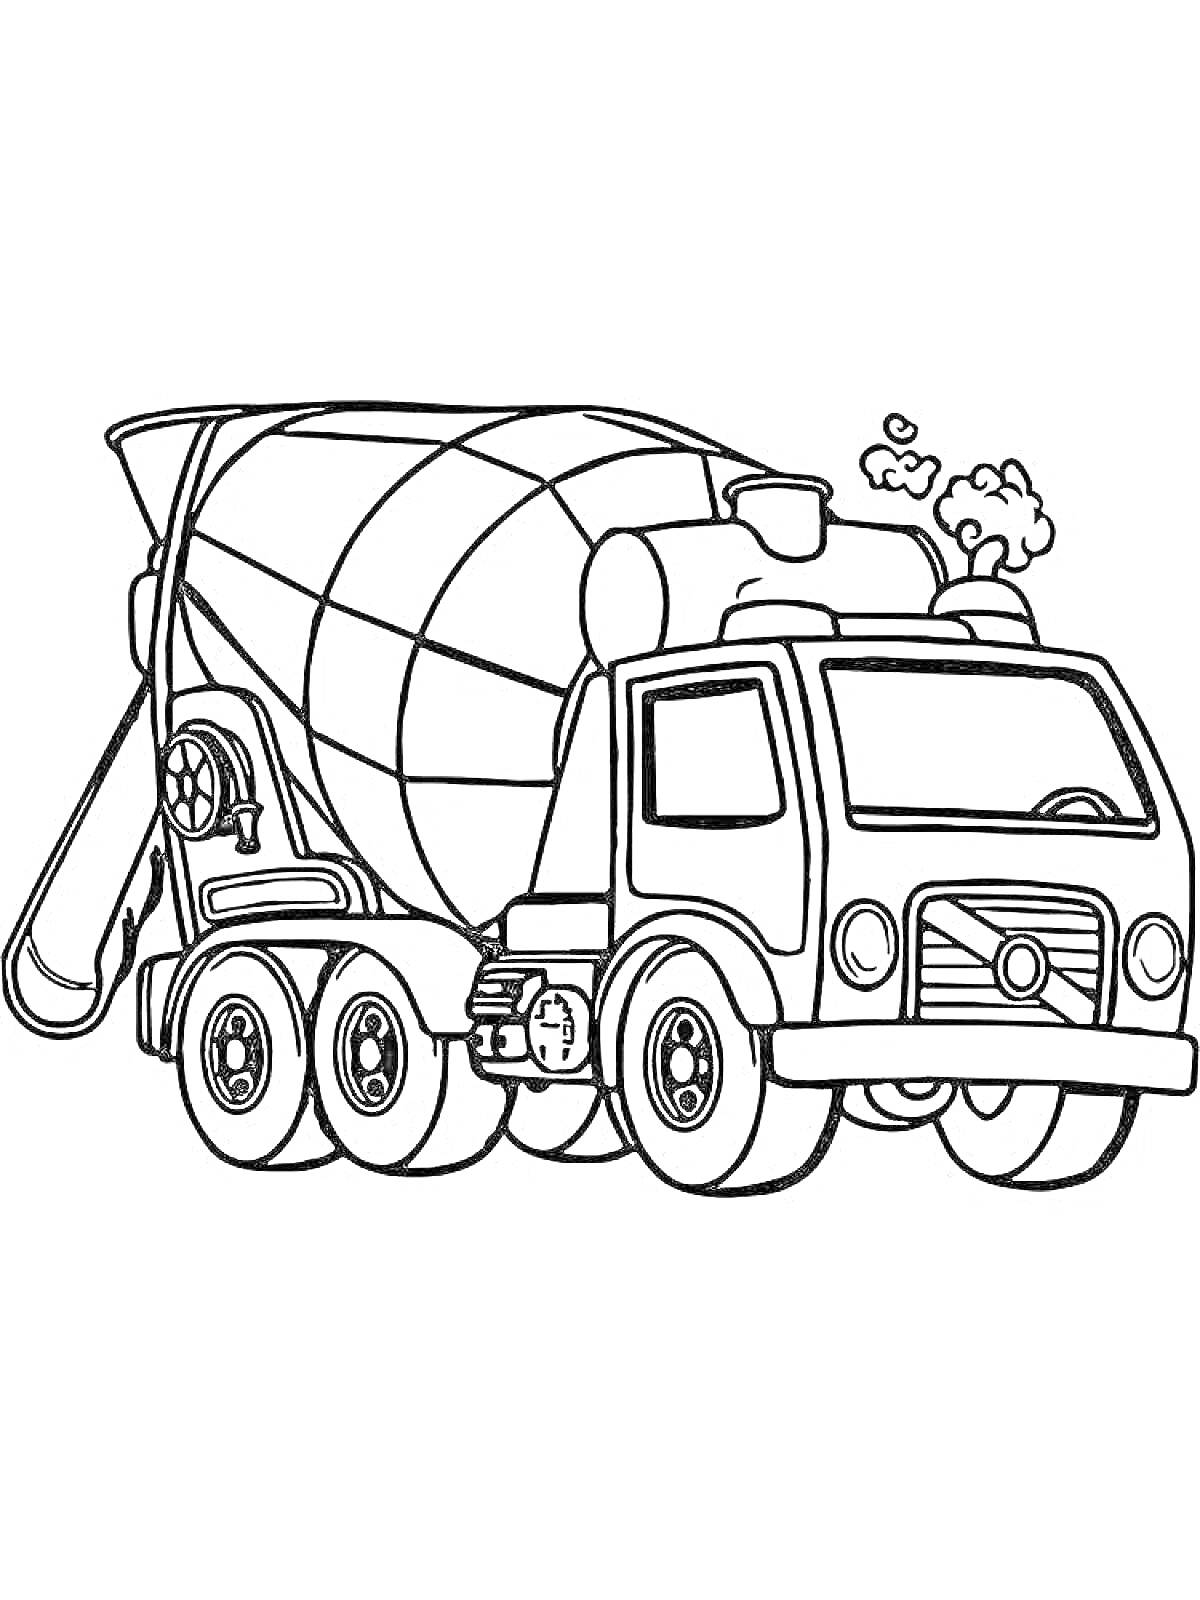 Раскраска Бетономешалка с барабаном, колесами, трубой и выгрузной лентой на кузове